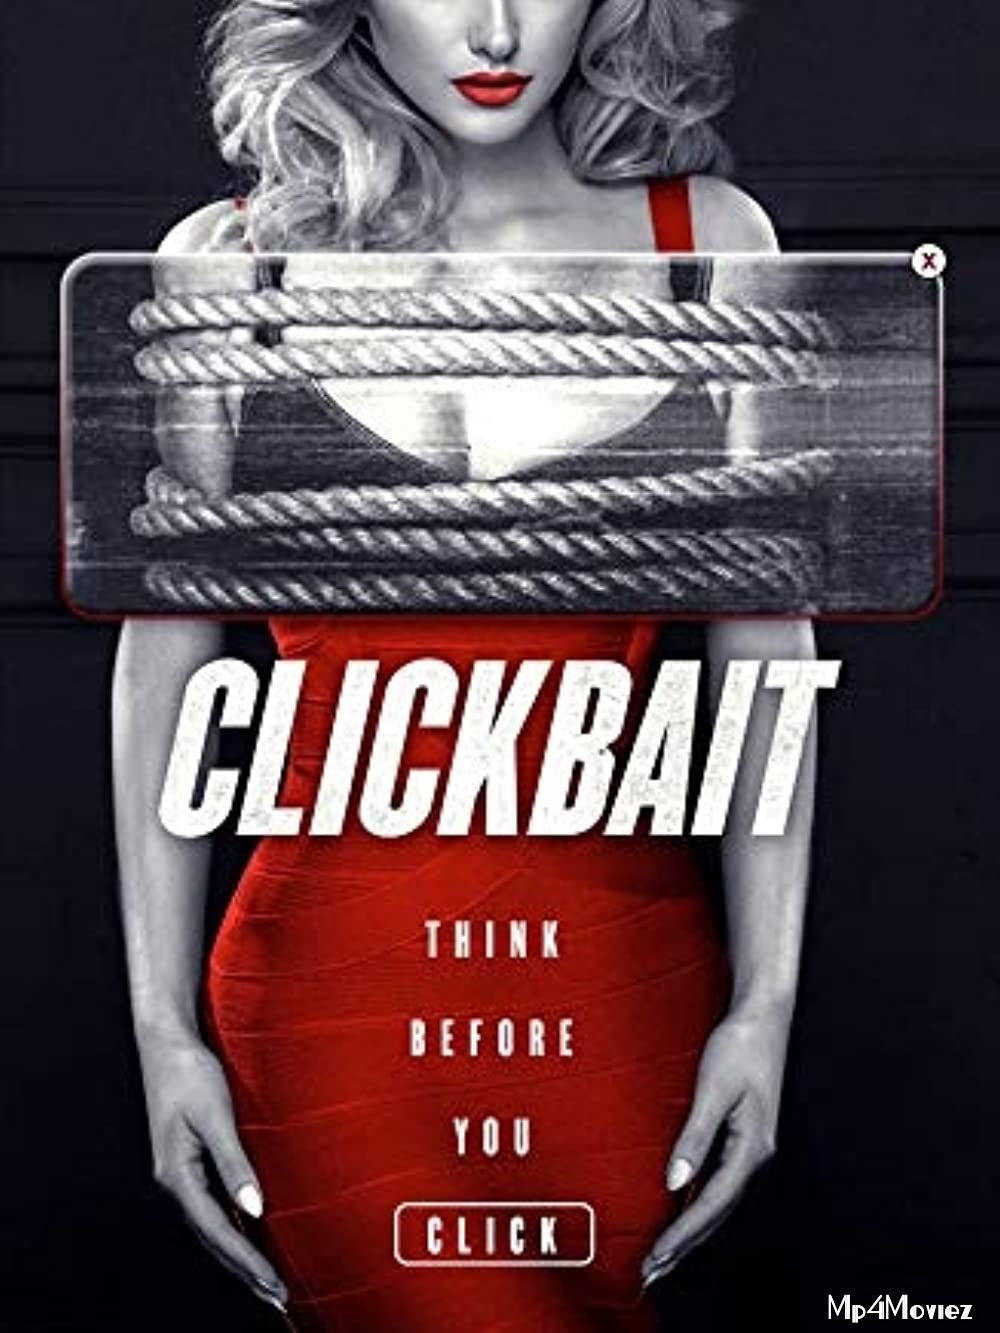 Clickbait (2020) Urdu HDRip download full movie